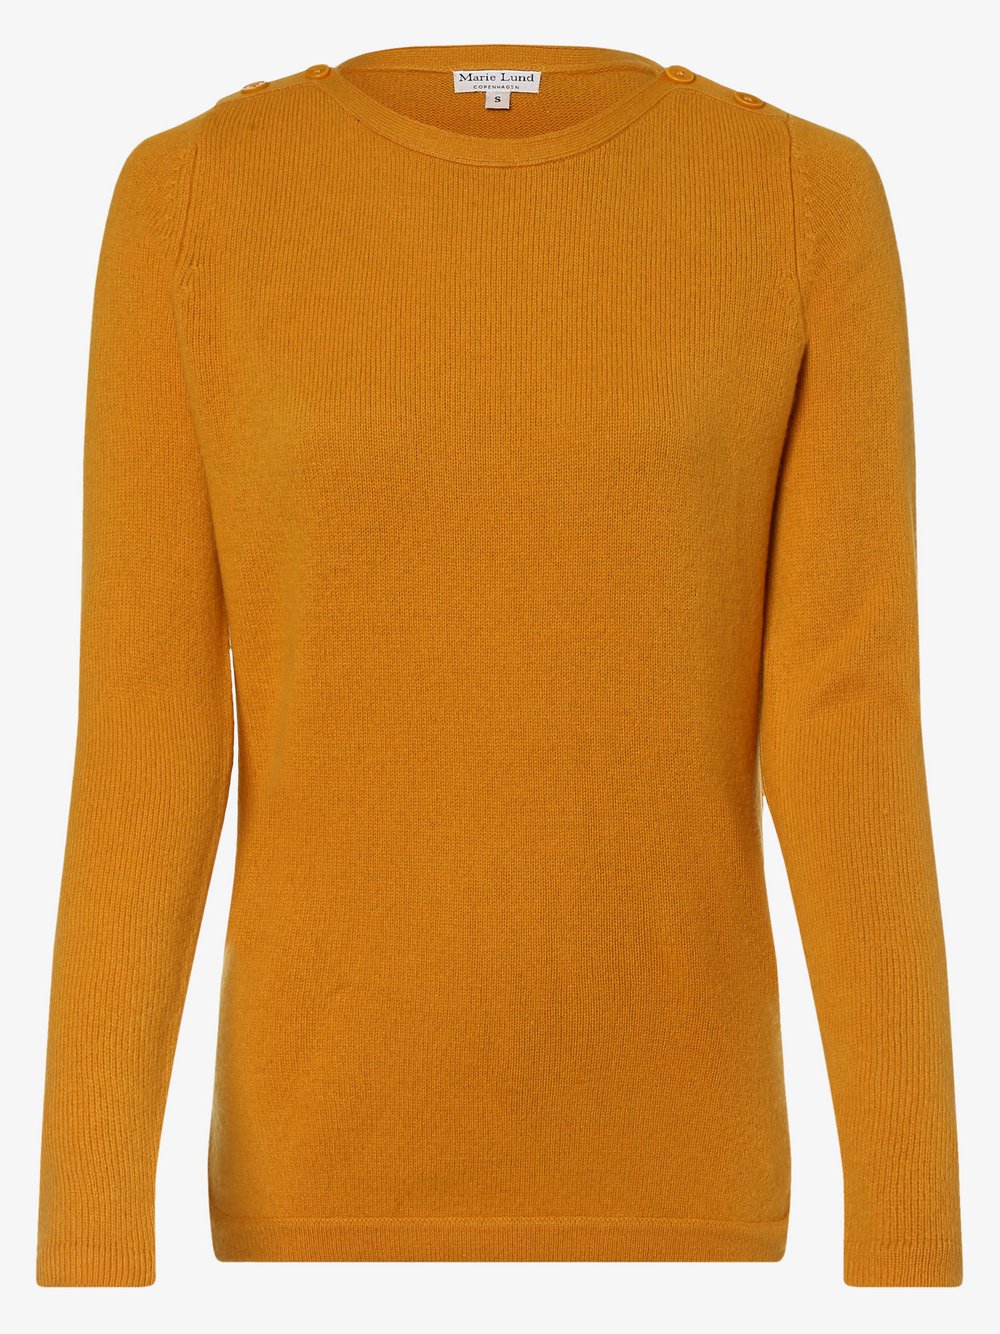 Marie Lund - Damski sweter z wełny merino, żółty